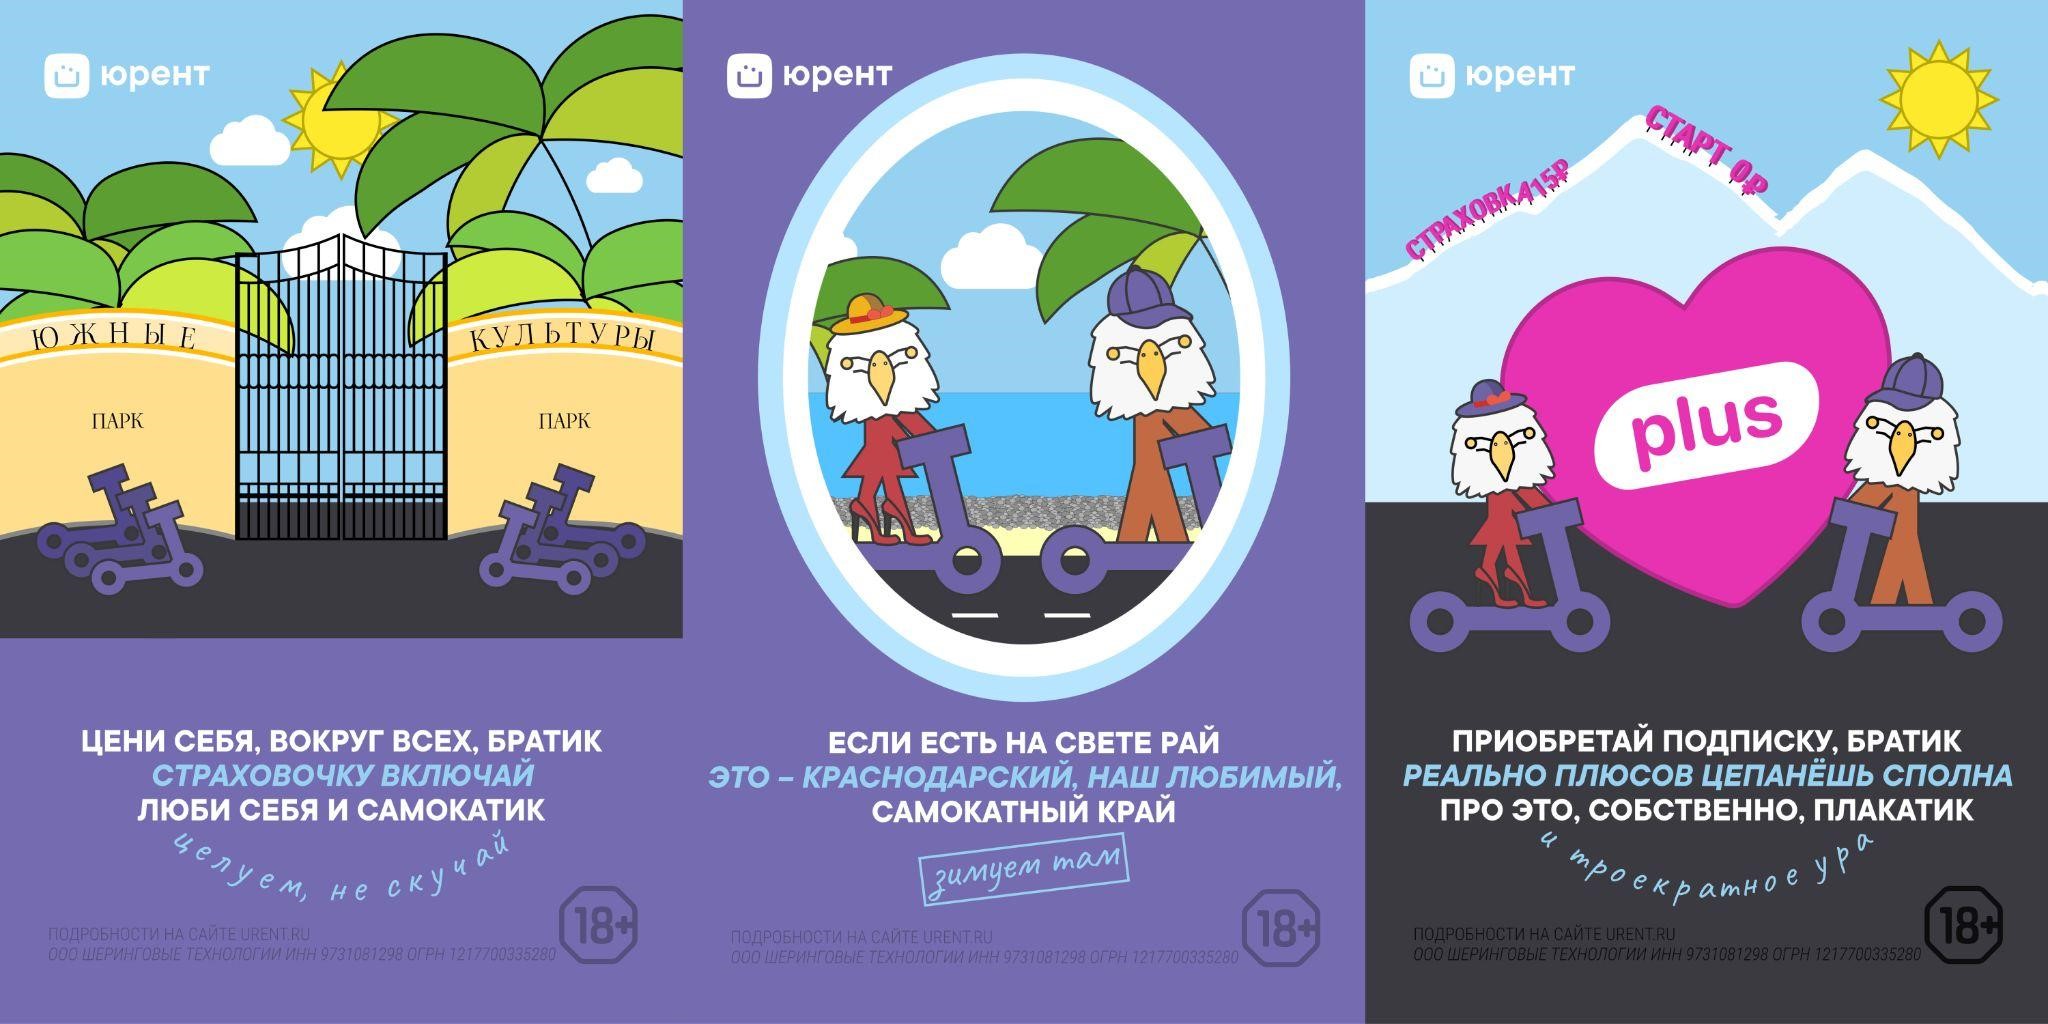 Краснодарский самокатный рай: "Юрент" запустил акцию о правилах дорожного движения в Сочи, где самокаты работают круглый год | Новости компании